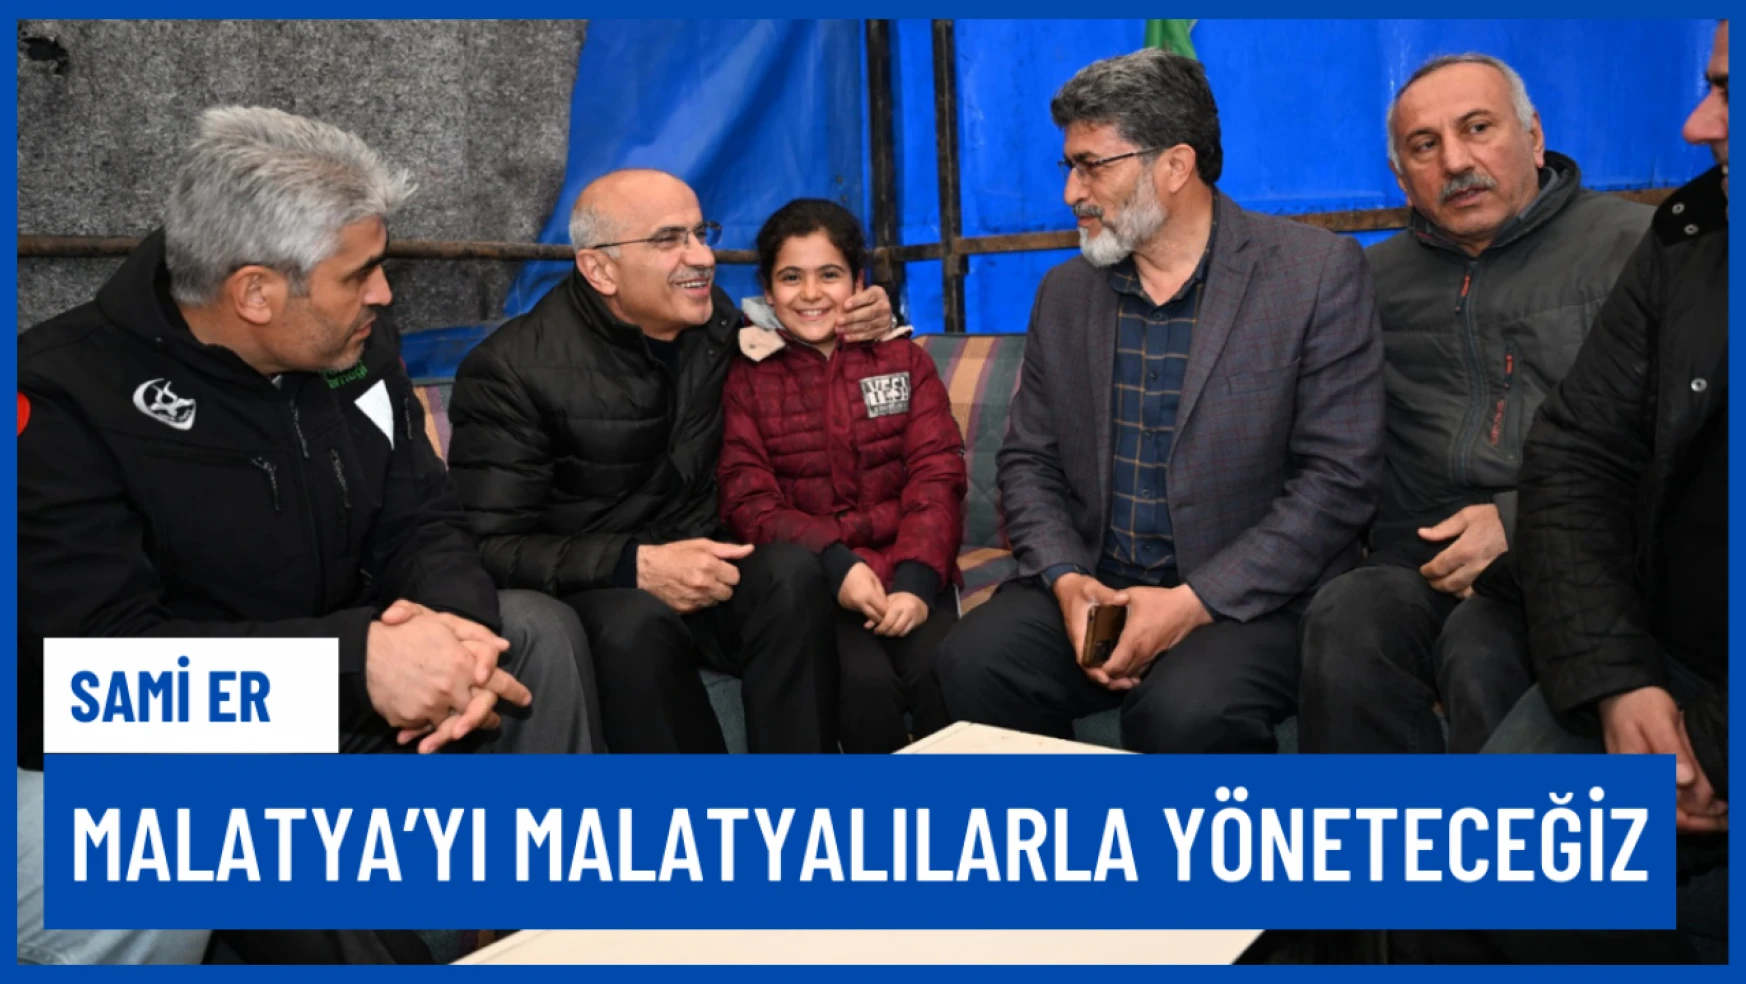 Sami Er: Malatya'yı Malatyalılarla birlikte yöneteceğiz